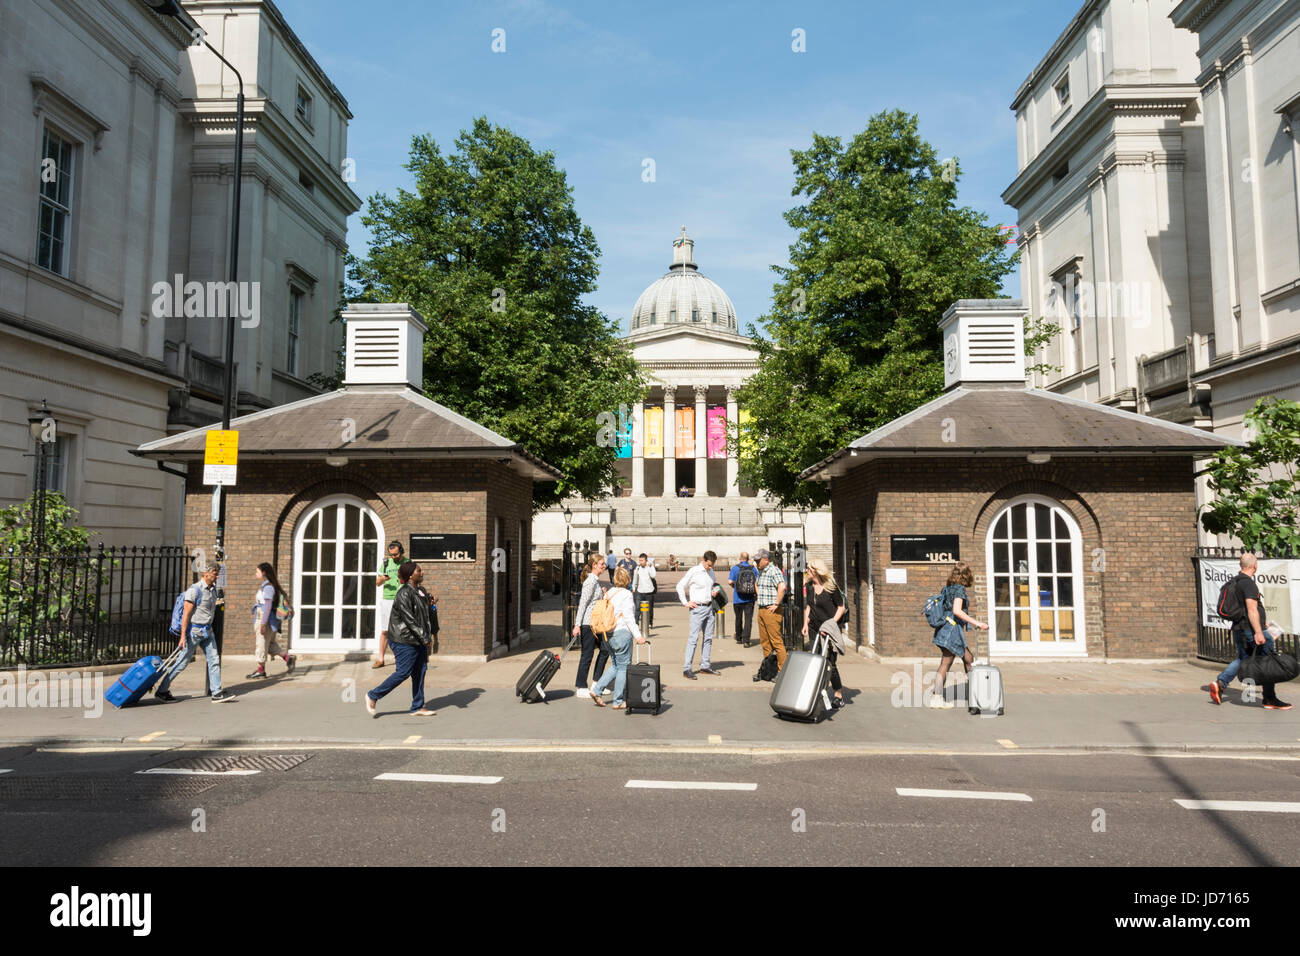 Les étudiants sur Gower Street, près du quad, à l'University College London, England, UK Banque D'Images